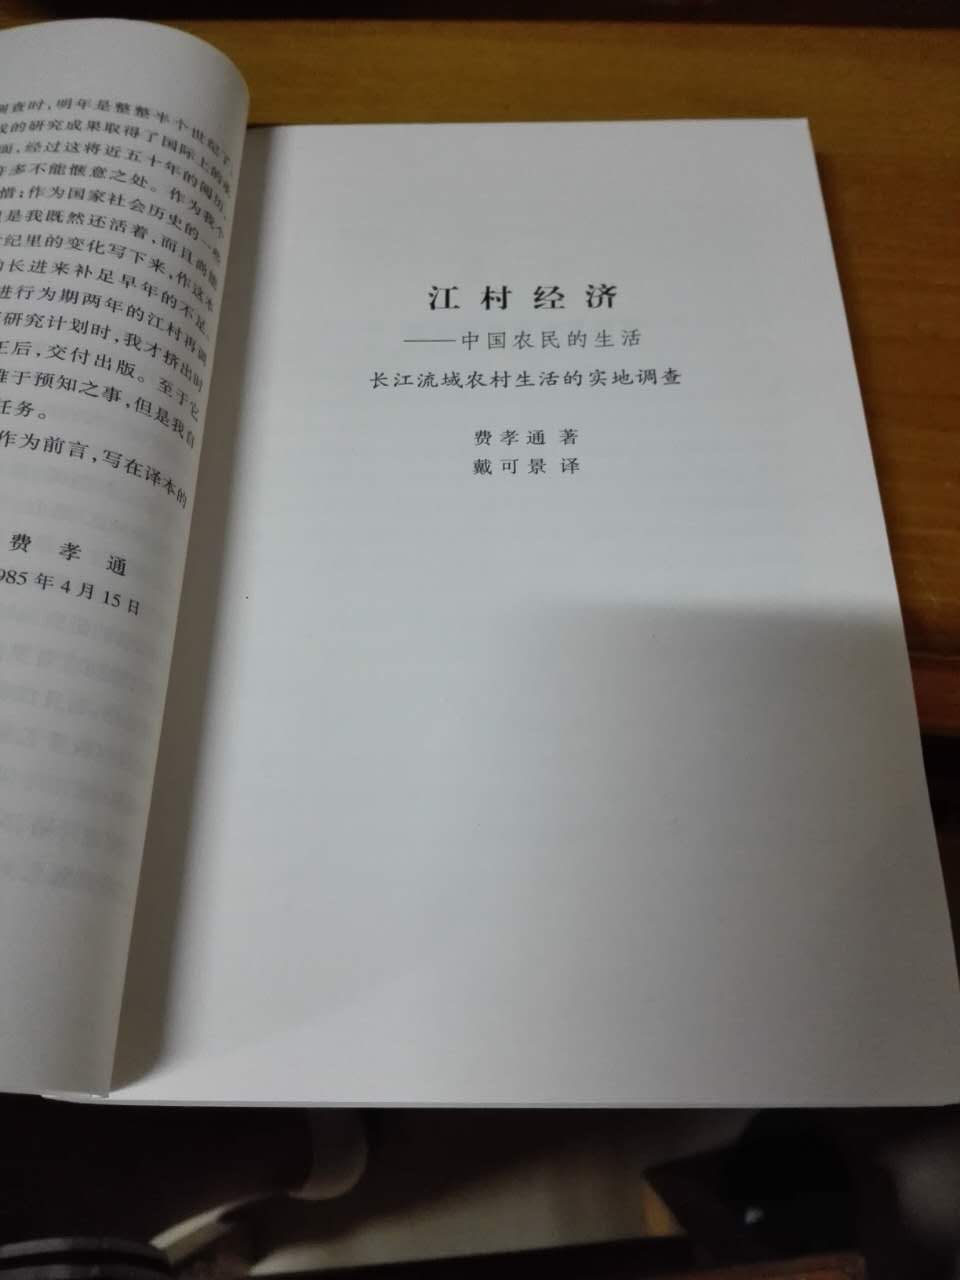 《江村经济：中国农民的生活》是一本描述中国农民的消费、生产、分配和交易等体系的书，是根据对中国东部，太湖东南岸开弦弓村的实地考察写成的。它旨在说明这一经济体系与特定地理环境的关系，以及与这个社区的社会结构的关系。同大多数中国农村一样，这个村庄正经历着一个巨大的变迁过程。